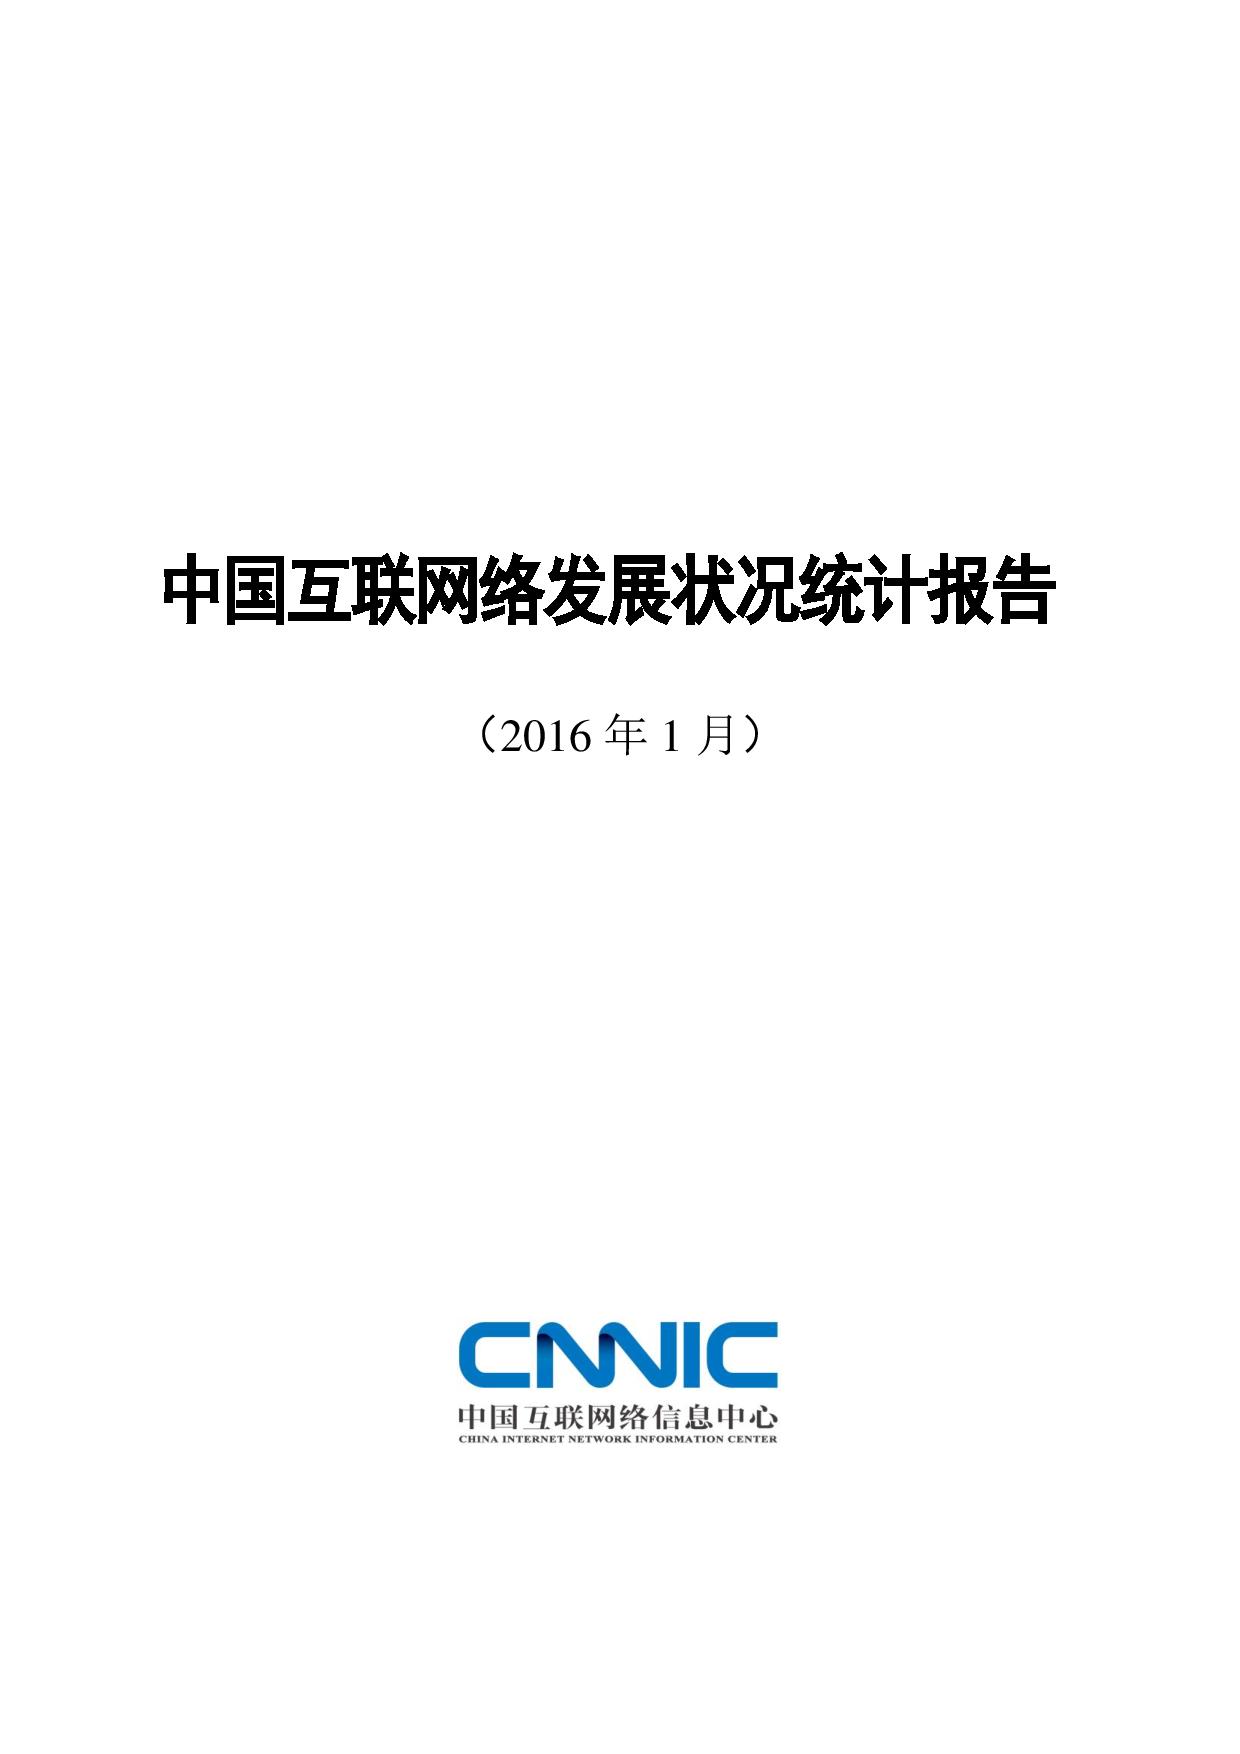 第37次《中国互联网络发展状况统计报告》